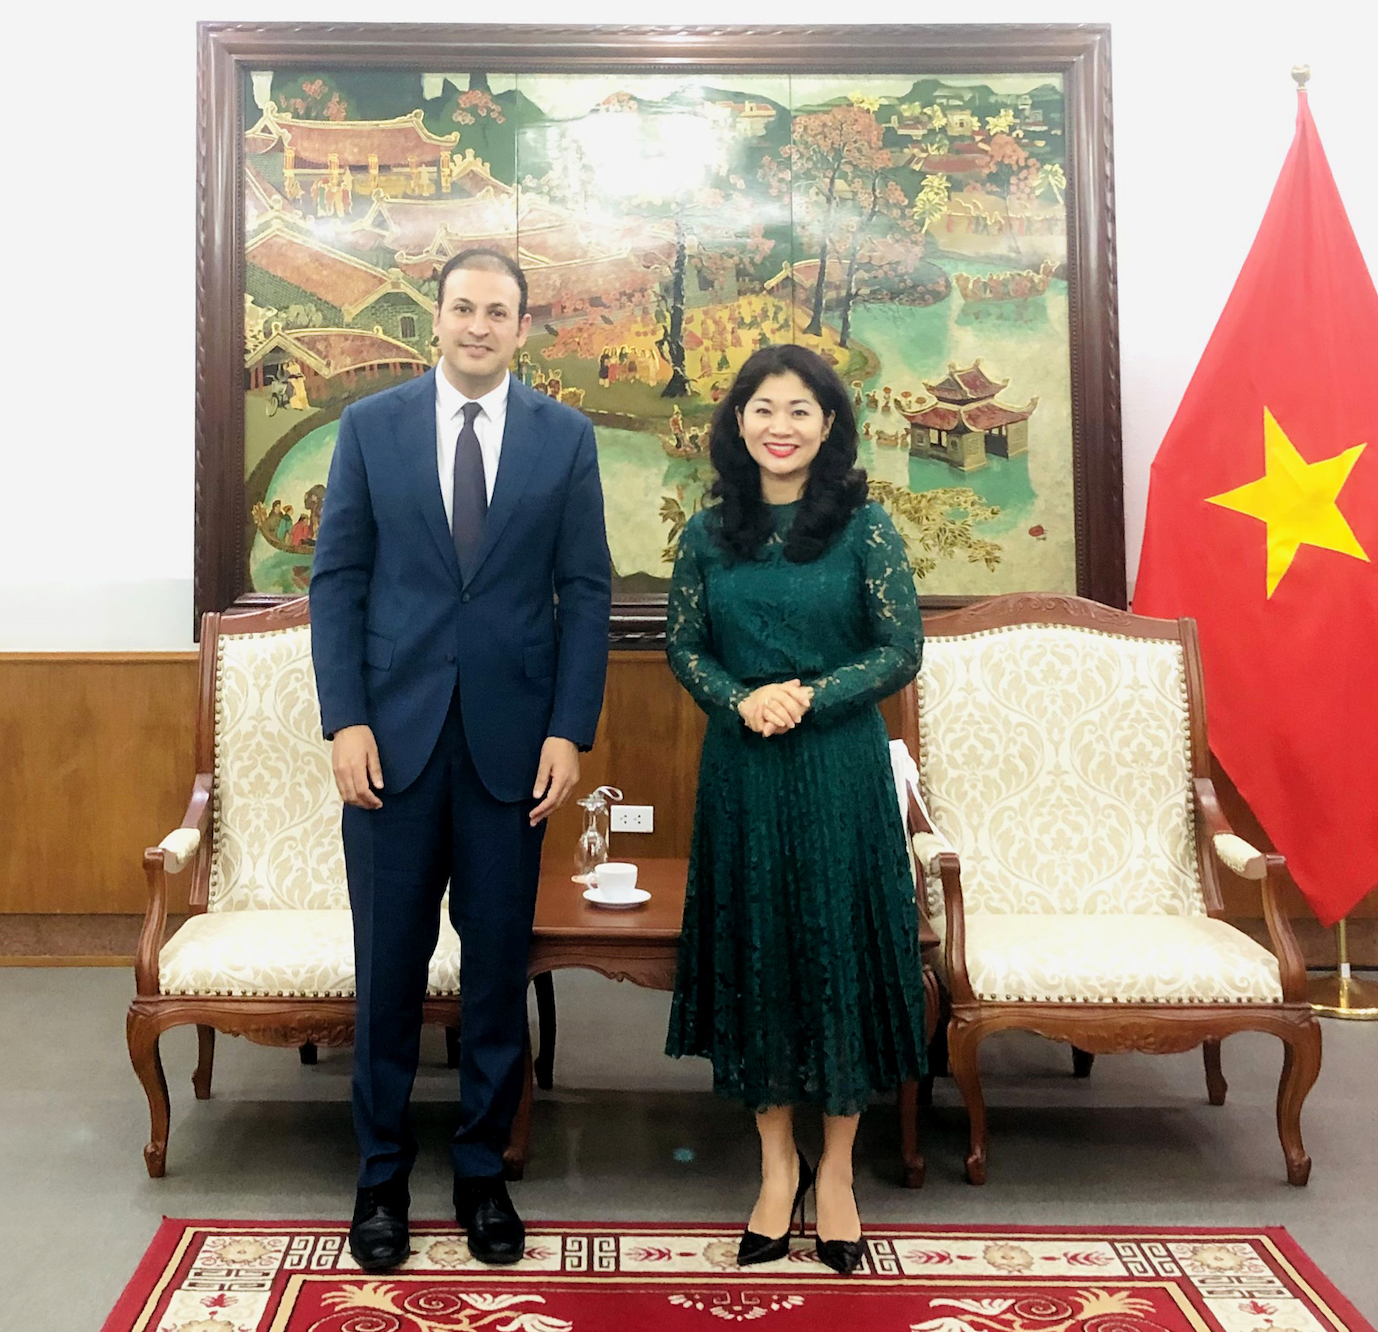 Tăng cường hợp tác song phương Việt Nam - Ả rập Xê út về văn hóa, thể thao và du lịch hướng tới 25 năm thiết lập quan hệ ngoại giao